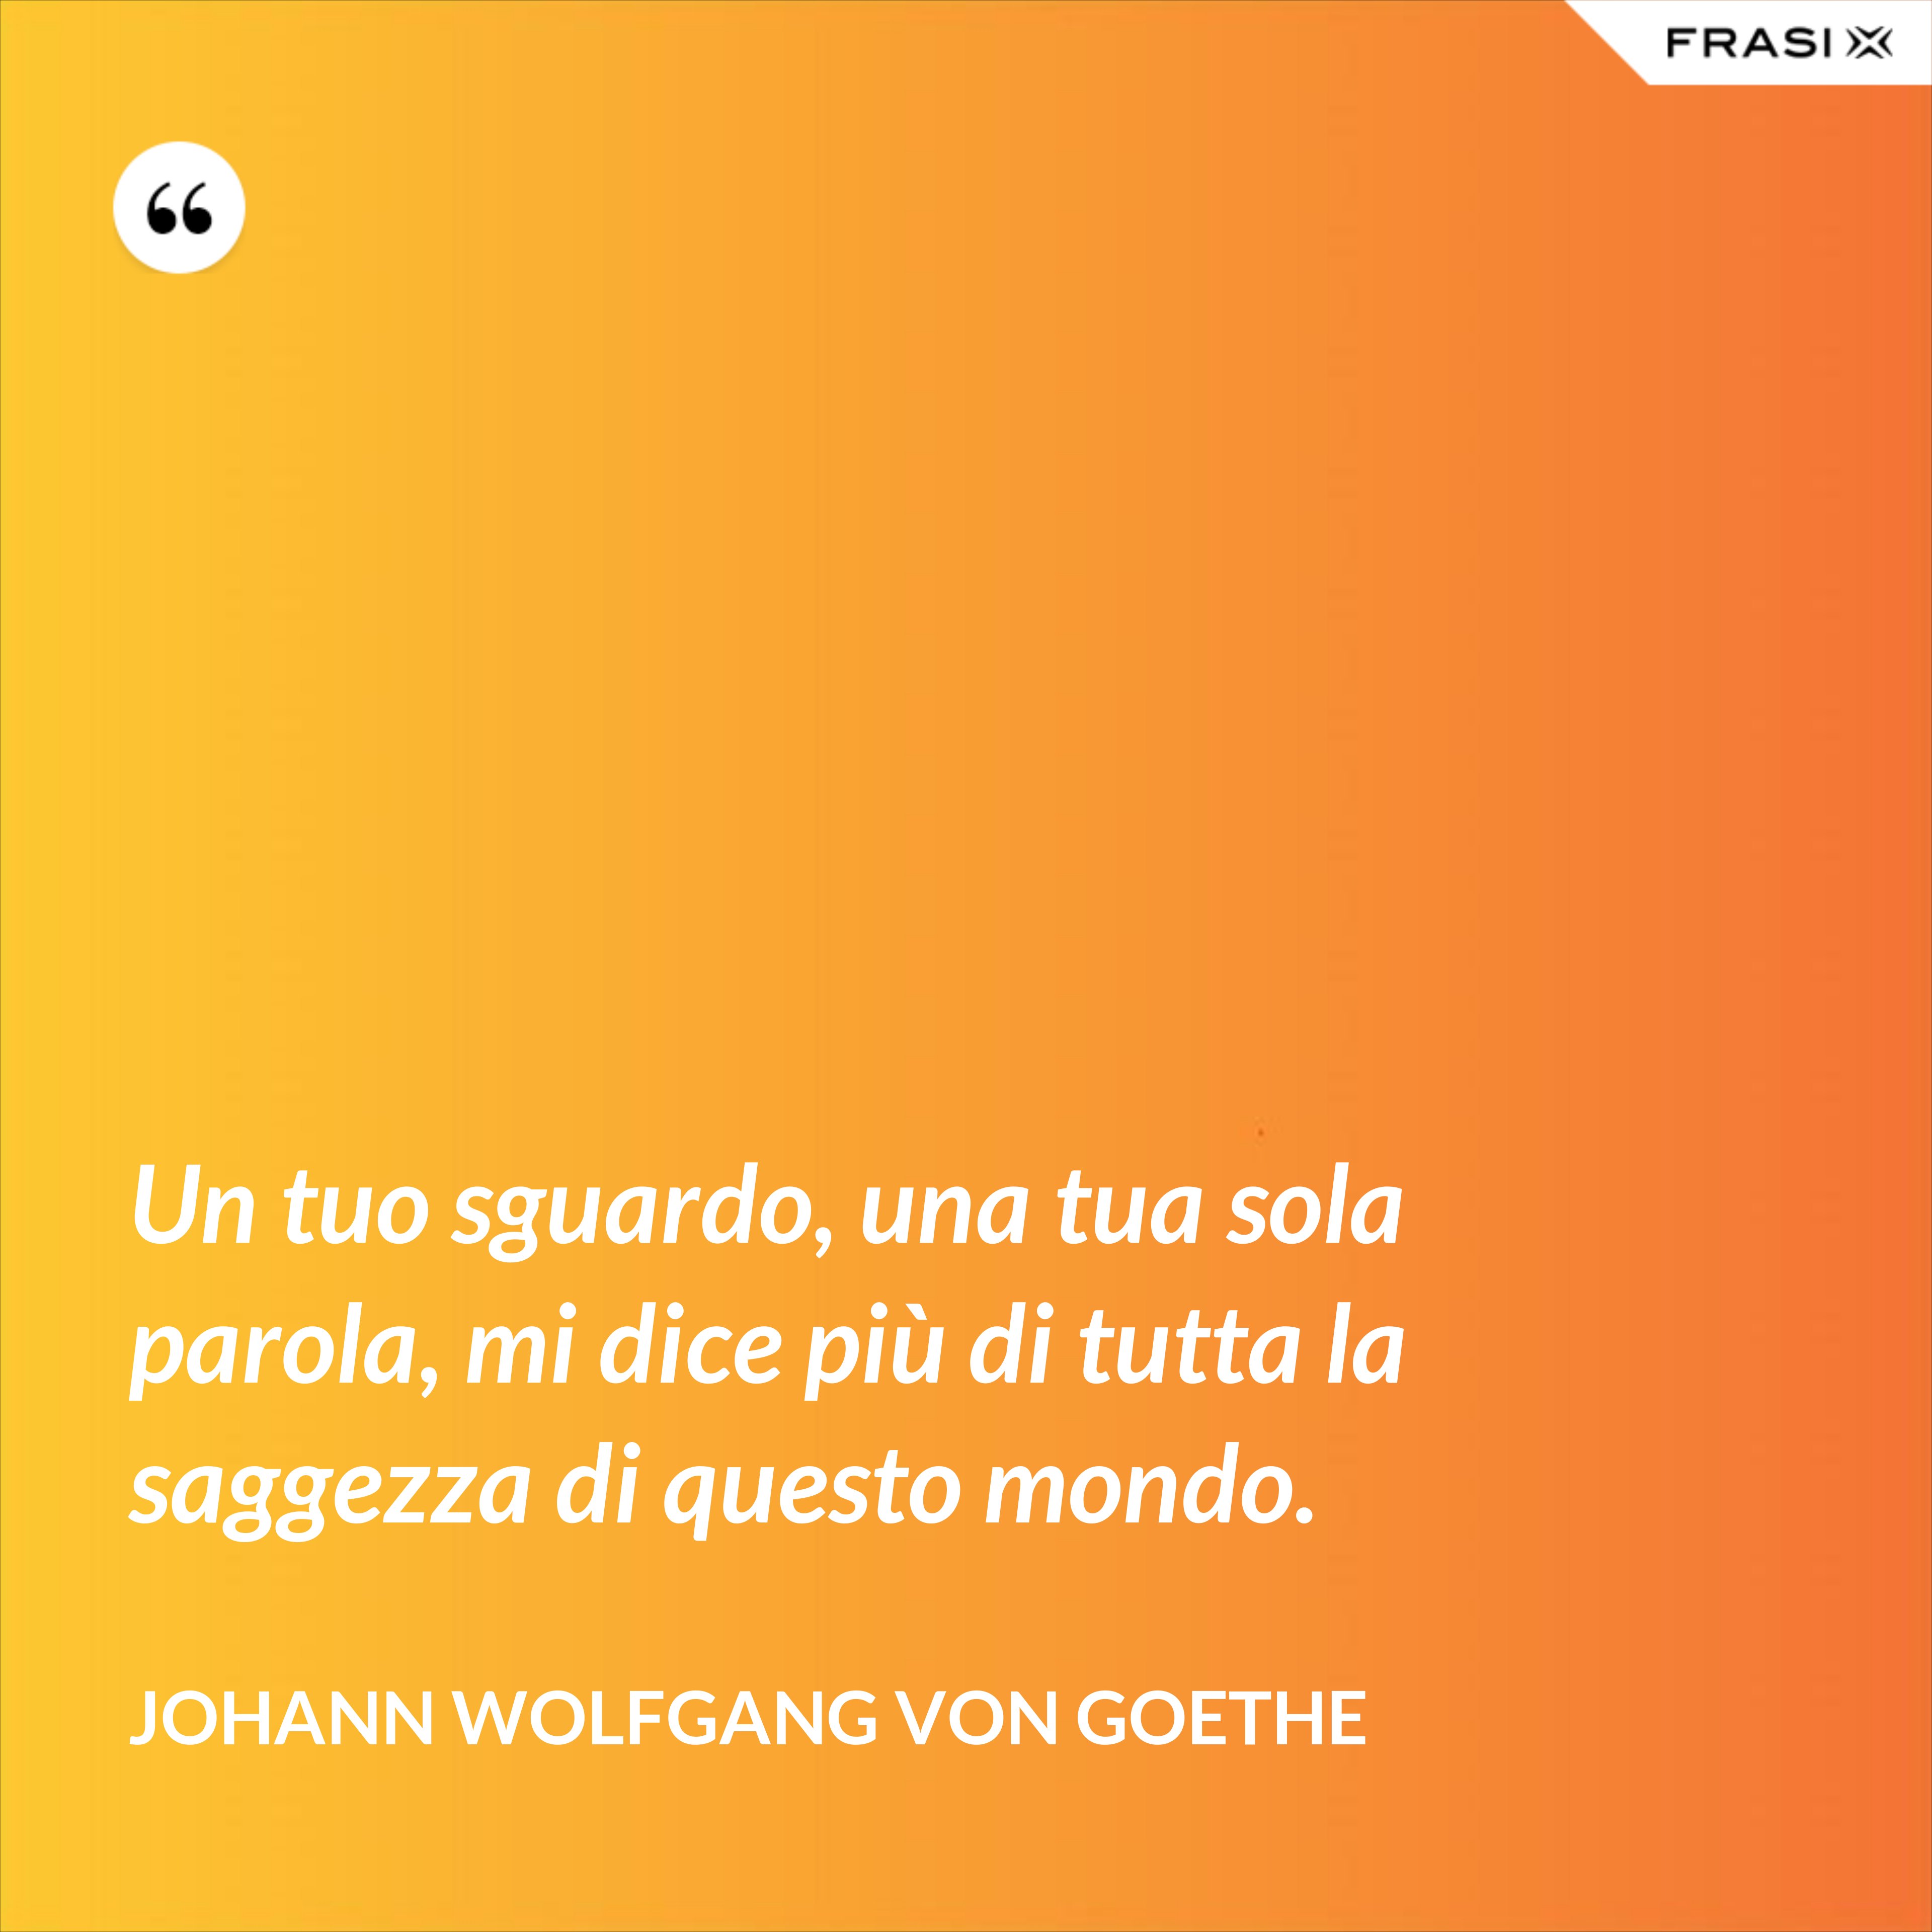 Un tuo sguardo, una tua sola parola, mi dice più di tutta la saggezza di questo mondo. - Johann Wolfgang von Goethe